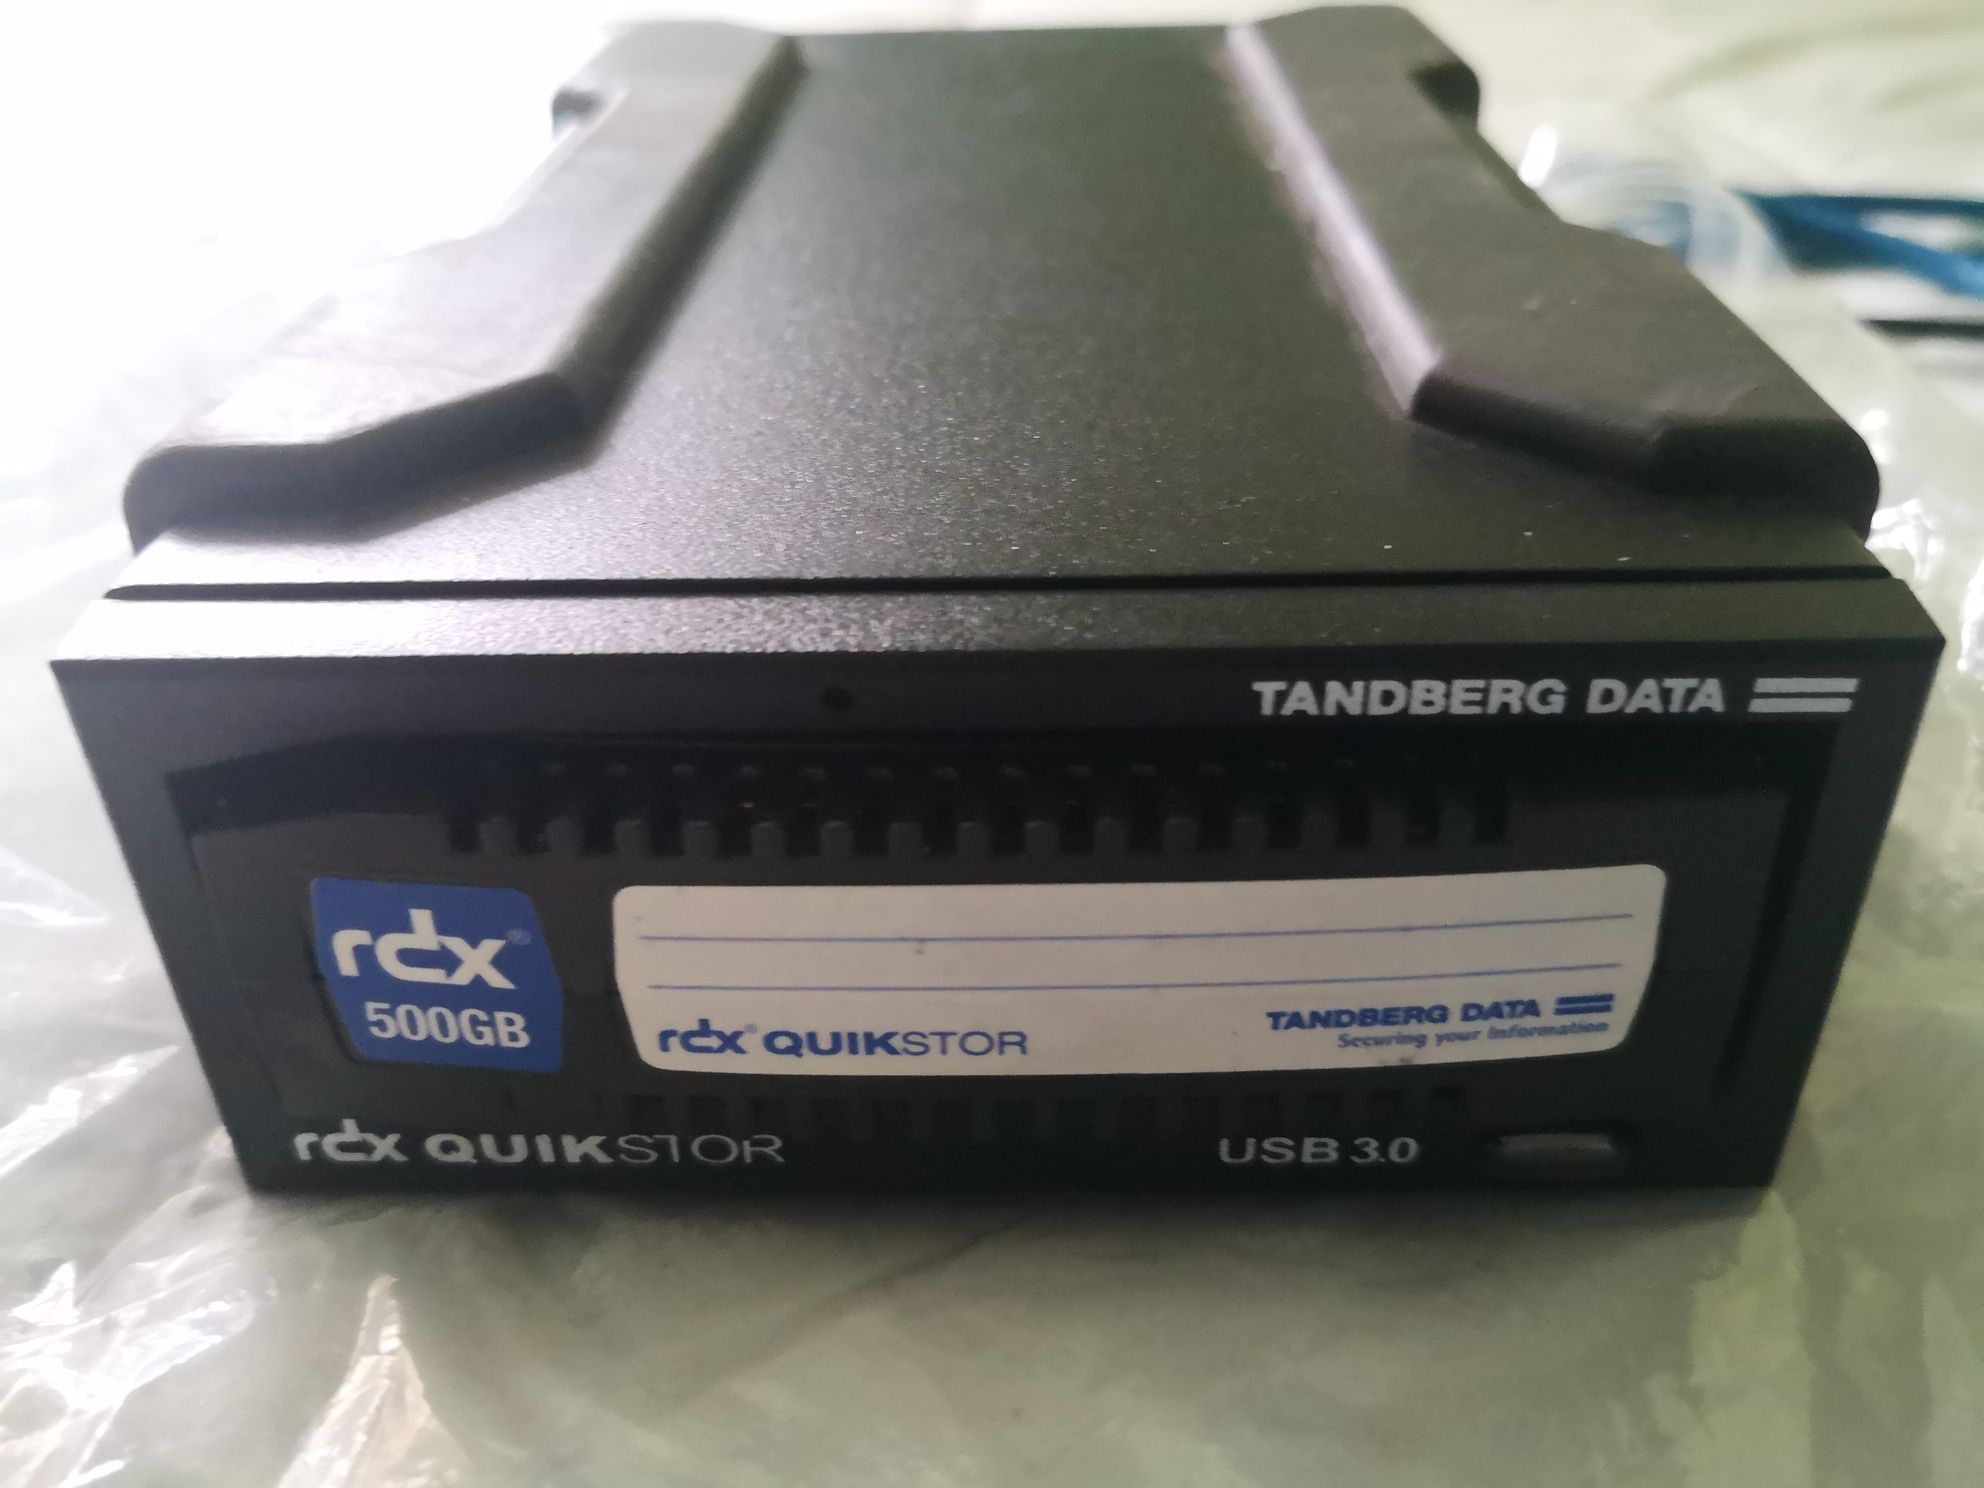 Hard disk 500GB Tandberg Data RDX QuikStor USB 3.0